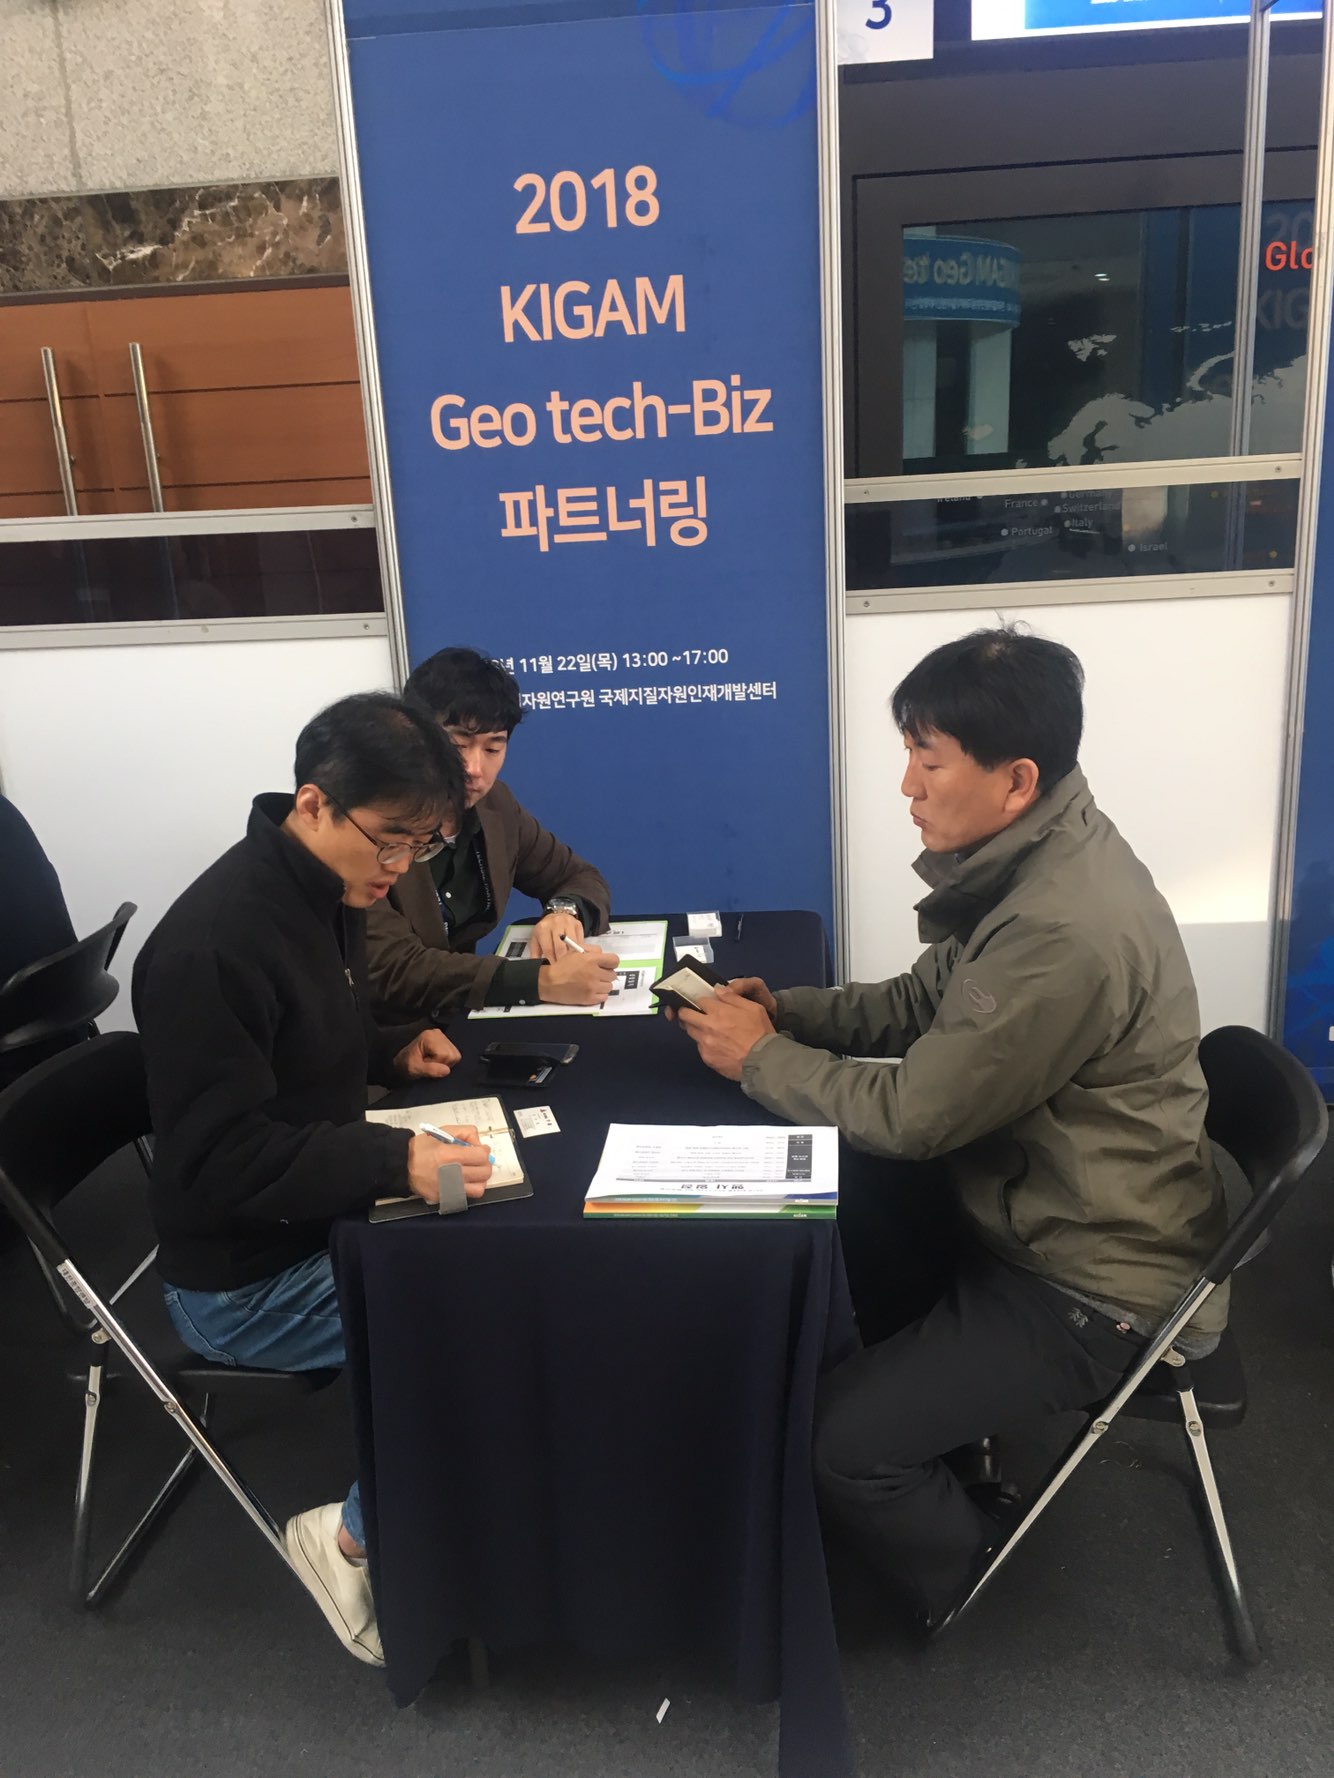 2018년 KIGAM Geotech-Biz 파트너링 개최 사진3